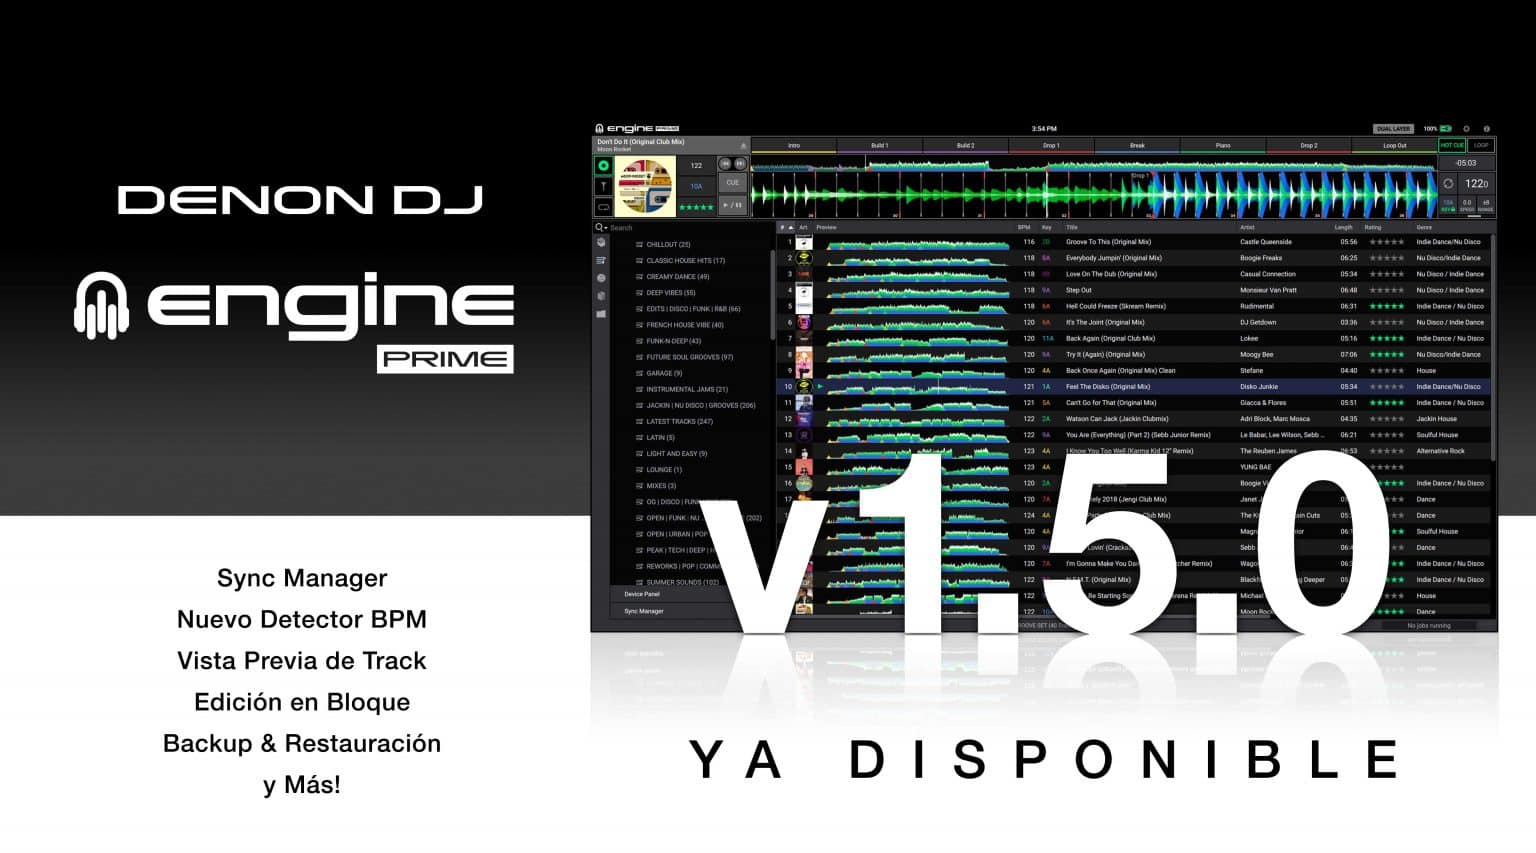 Engine Prime v1.5 de DENON DJ se actualiza